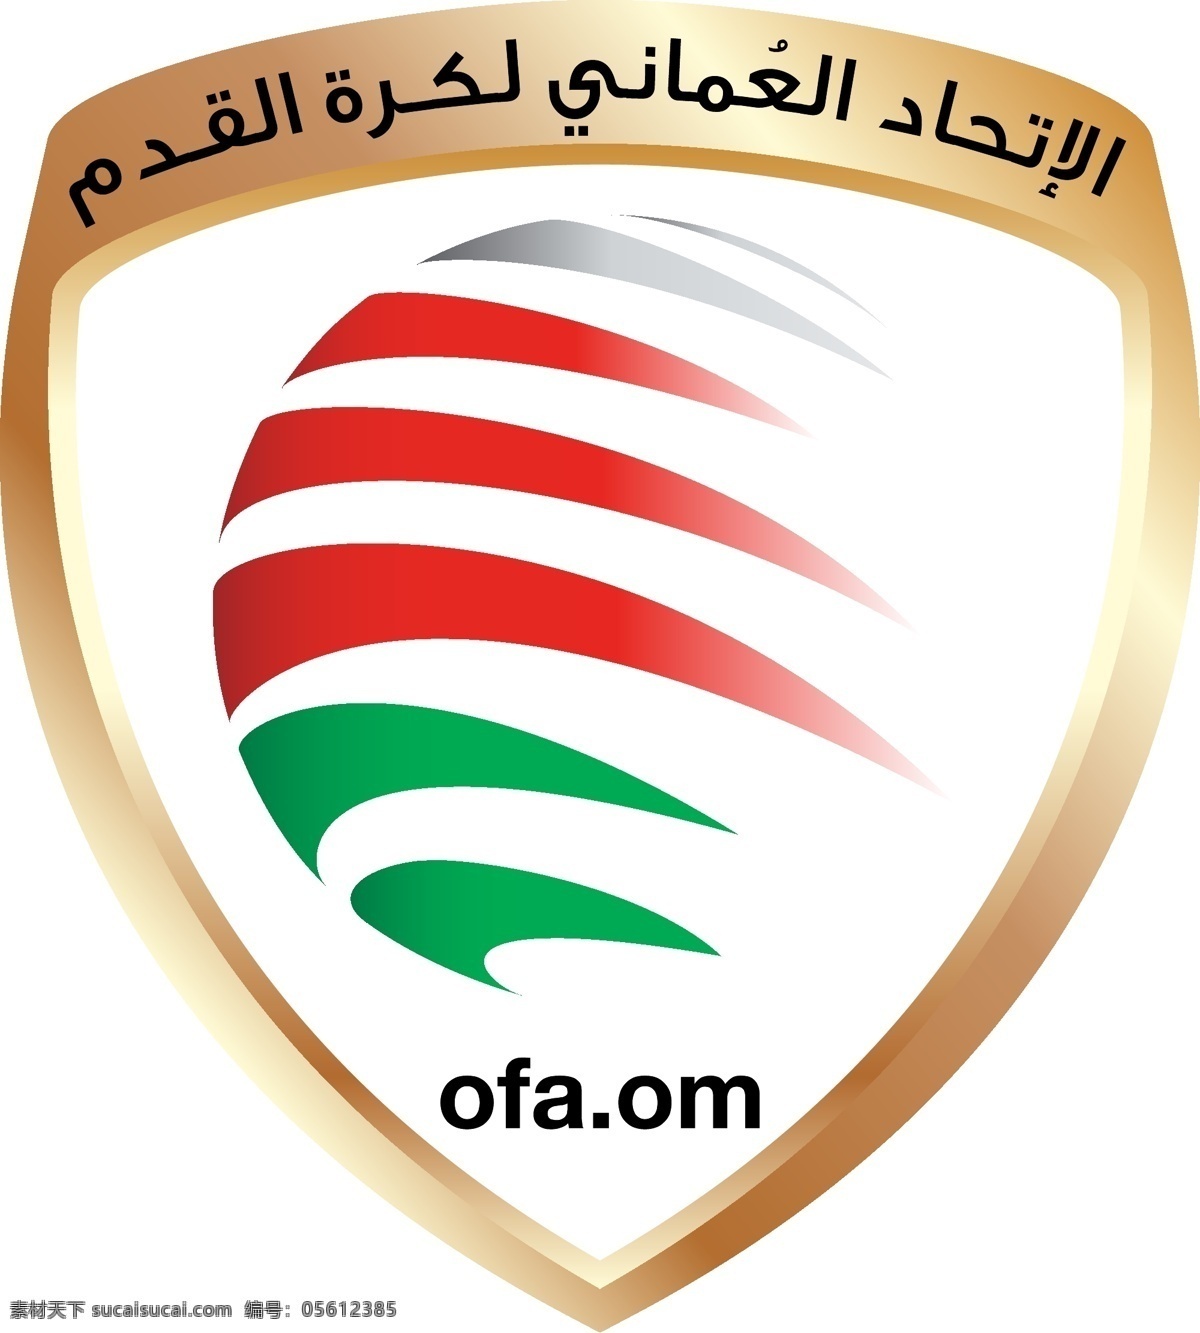 阿曼 国家 男子 足球队 队 徽 logo 矢量图 soccer 标志 football oman 阿拉伯半岛 阿拉伯 西亚 运动会徽 标志图标 公共标识标志